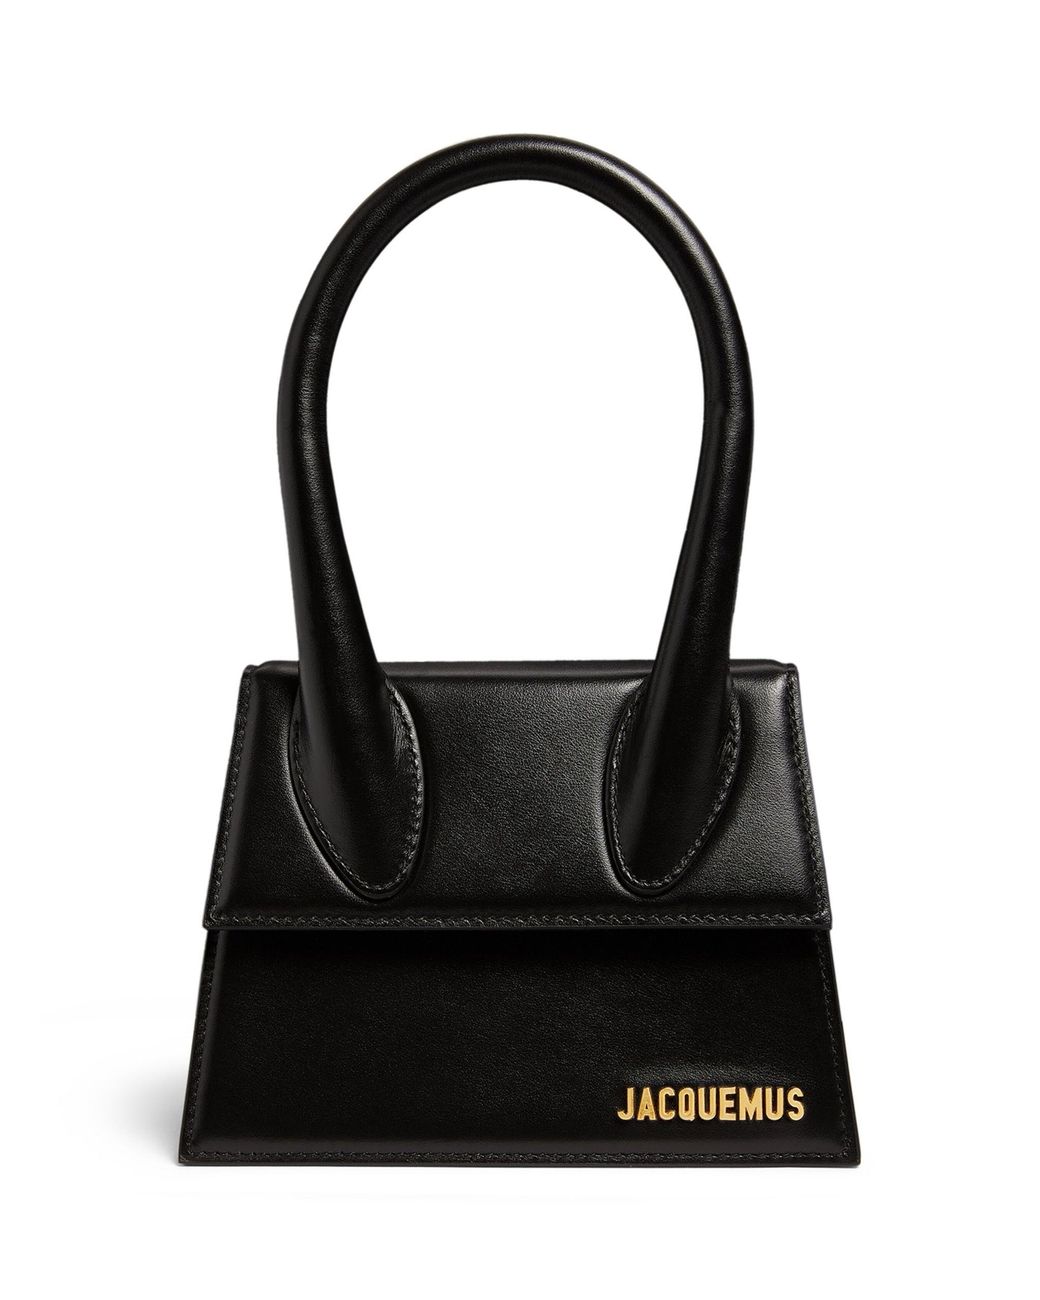 Jacquemus Medium Chiquito Top-handle Bag in Black | Lyst Canada